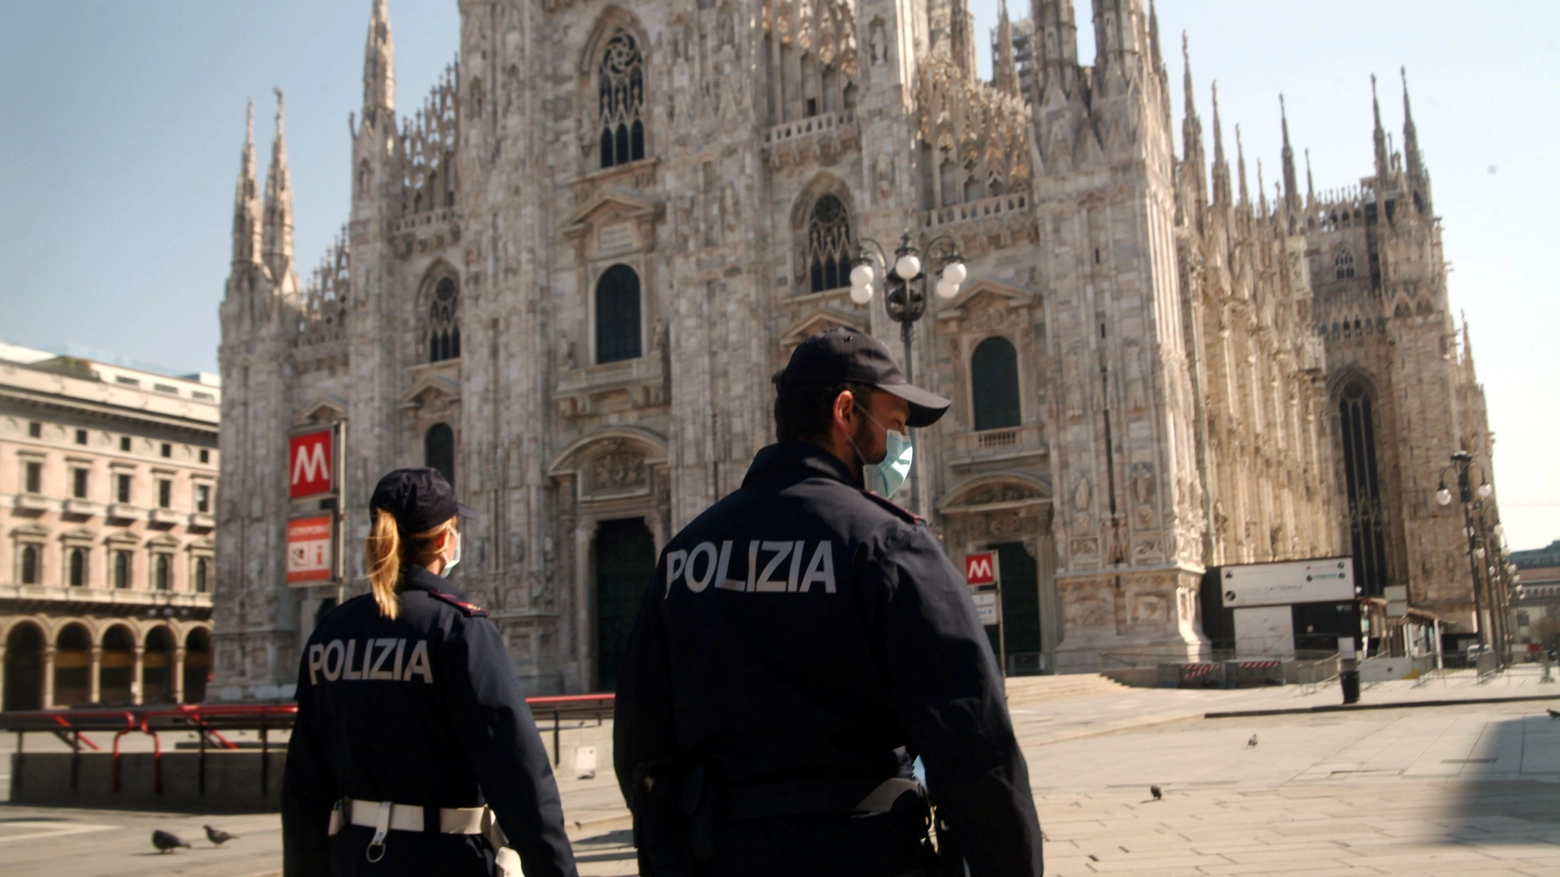 Polizia in azione a Milano durante l'emergenza Covid-19 (foto repertorio)